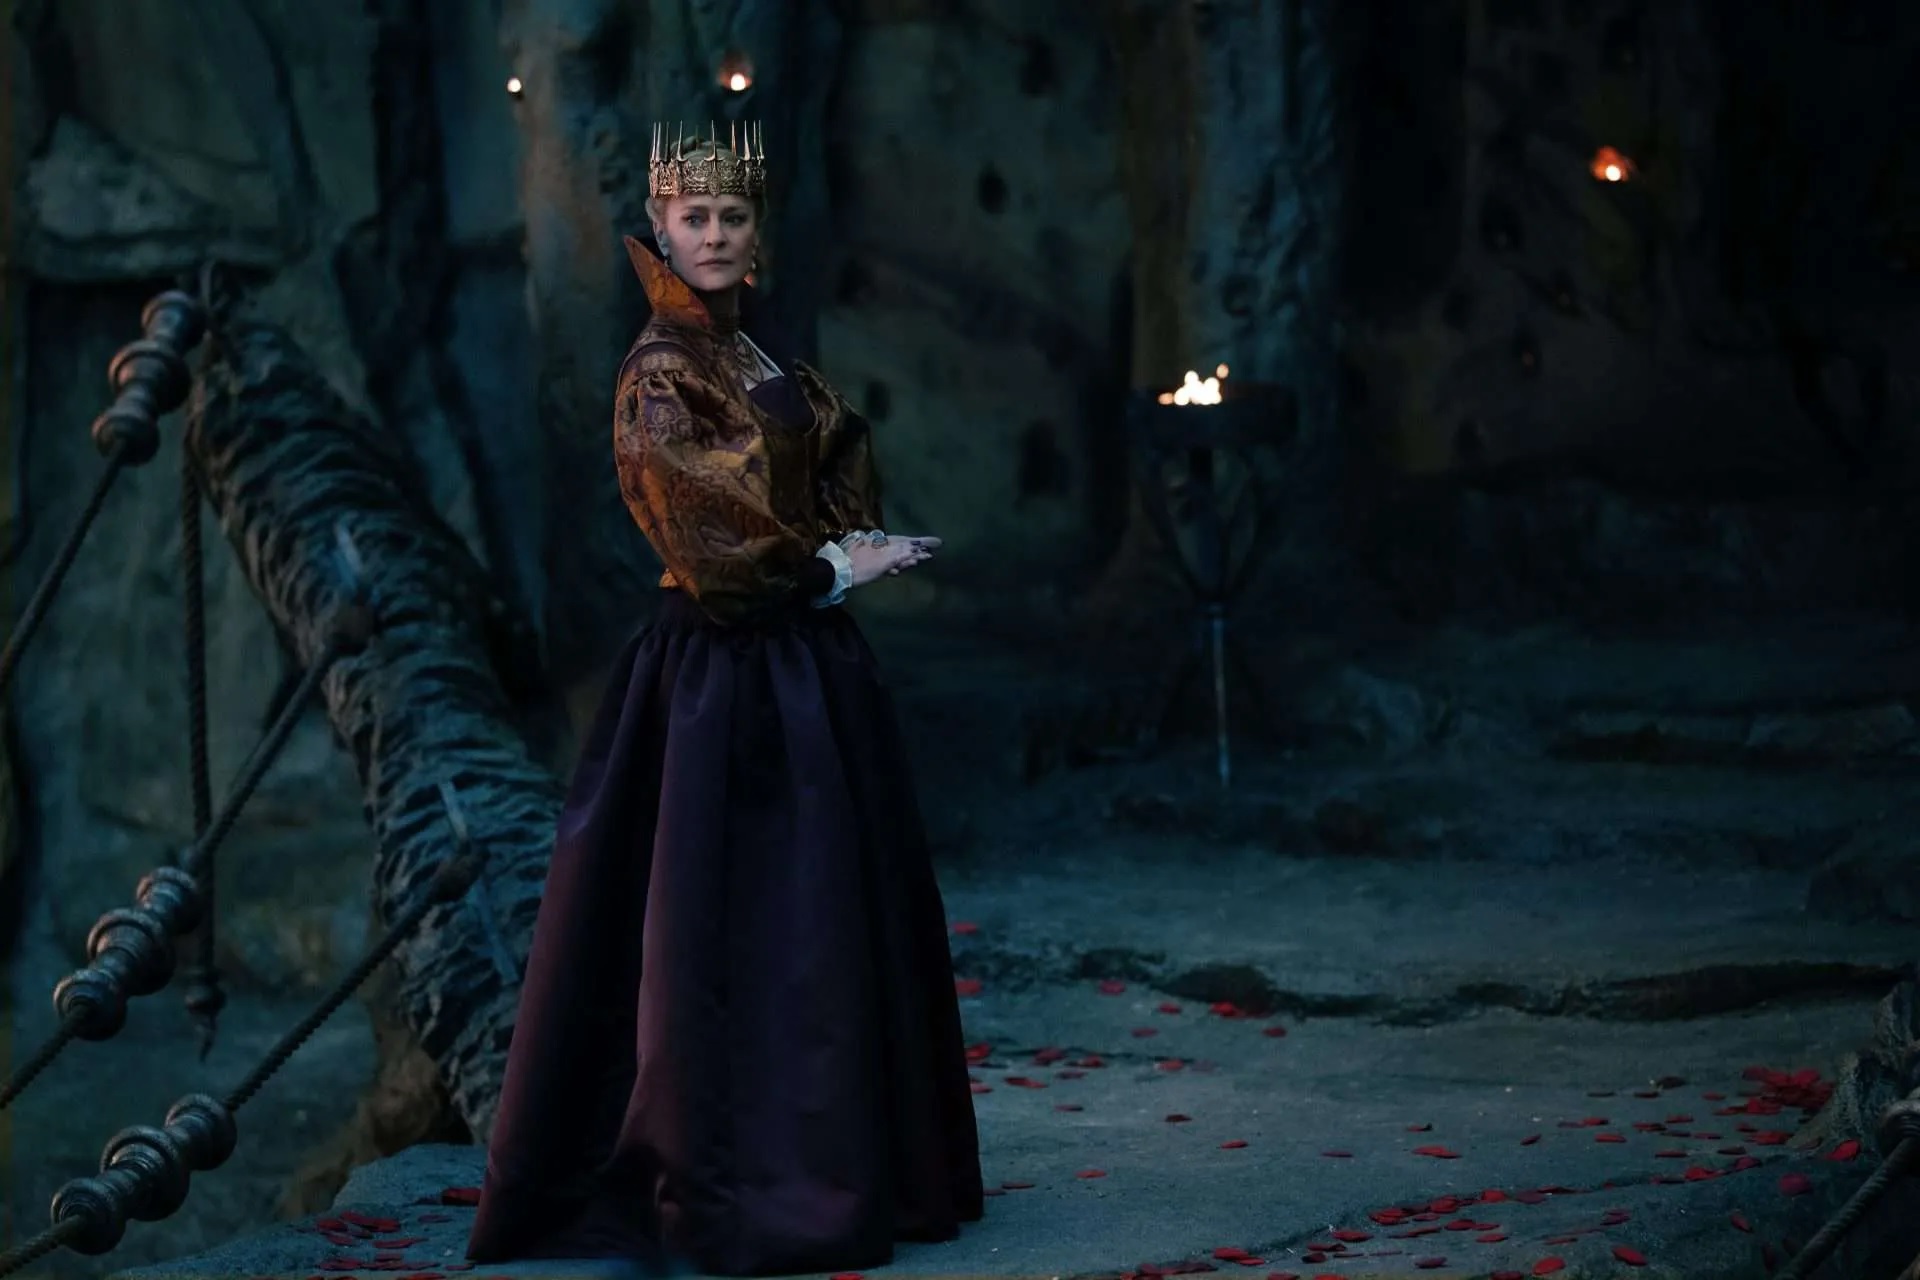 Auf dem Bild ist eine stattliche Königin zu sehen, die vor einem Höhleneingang steht